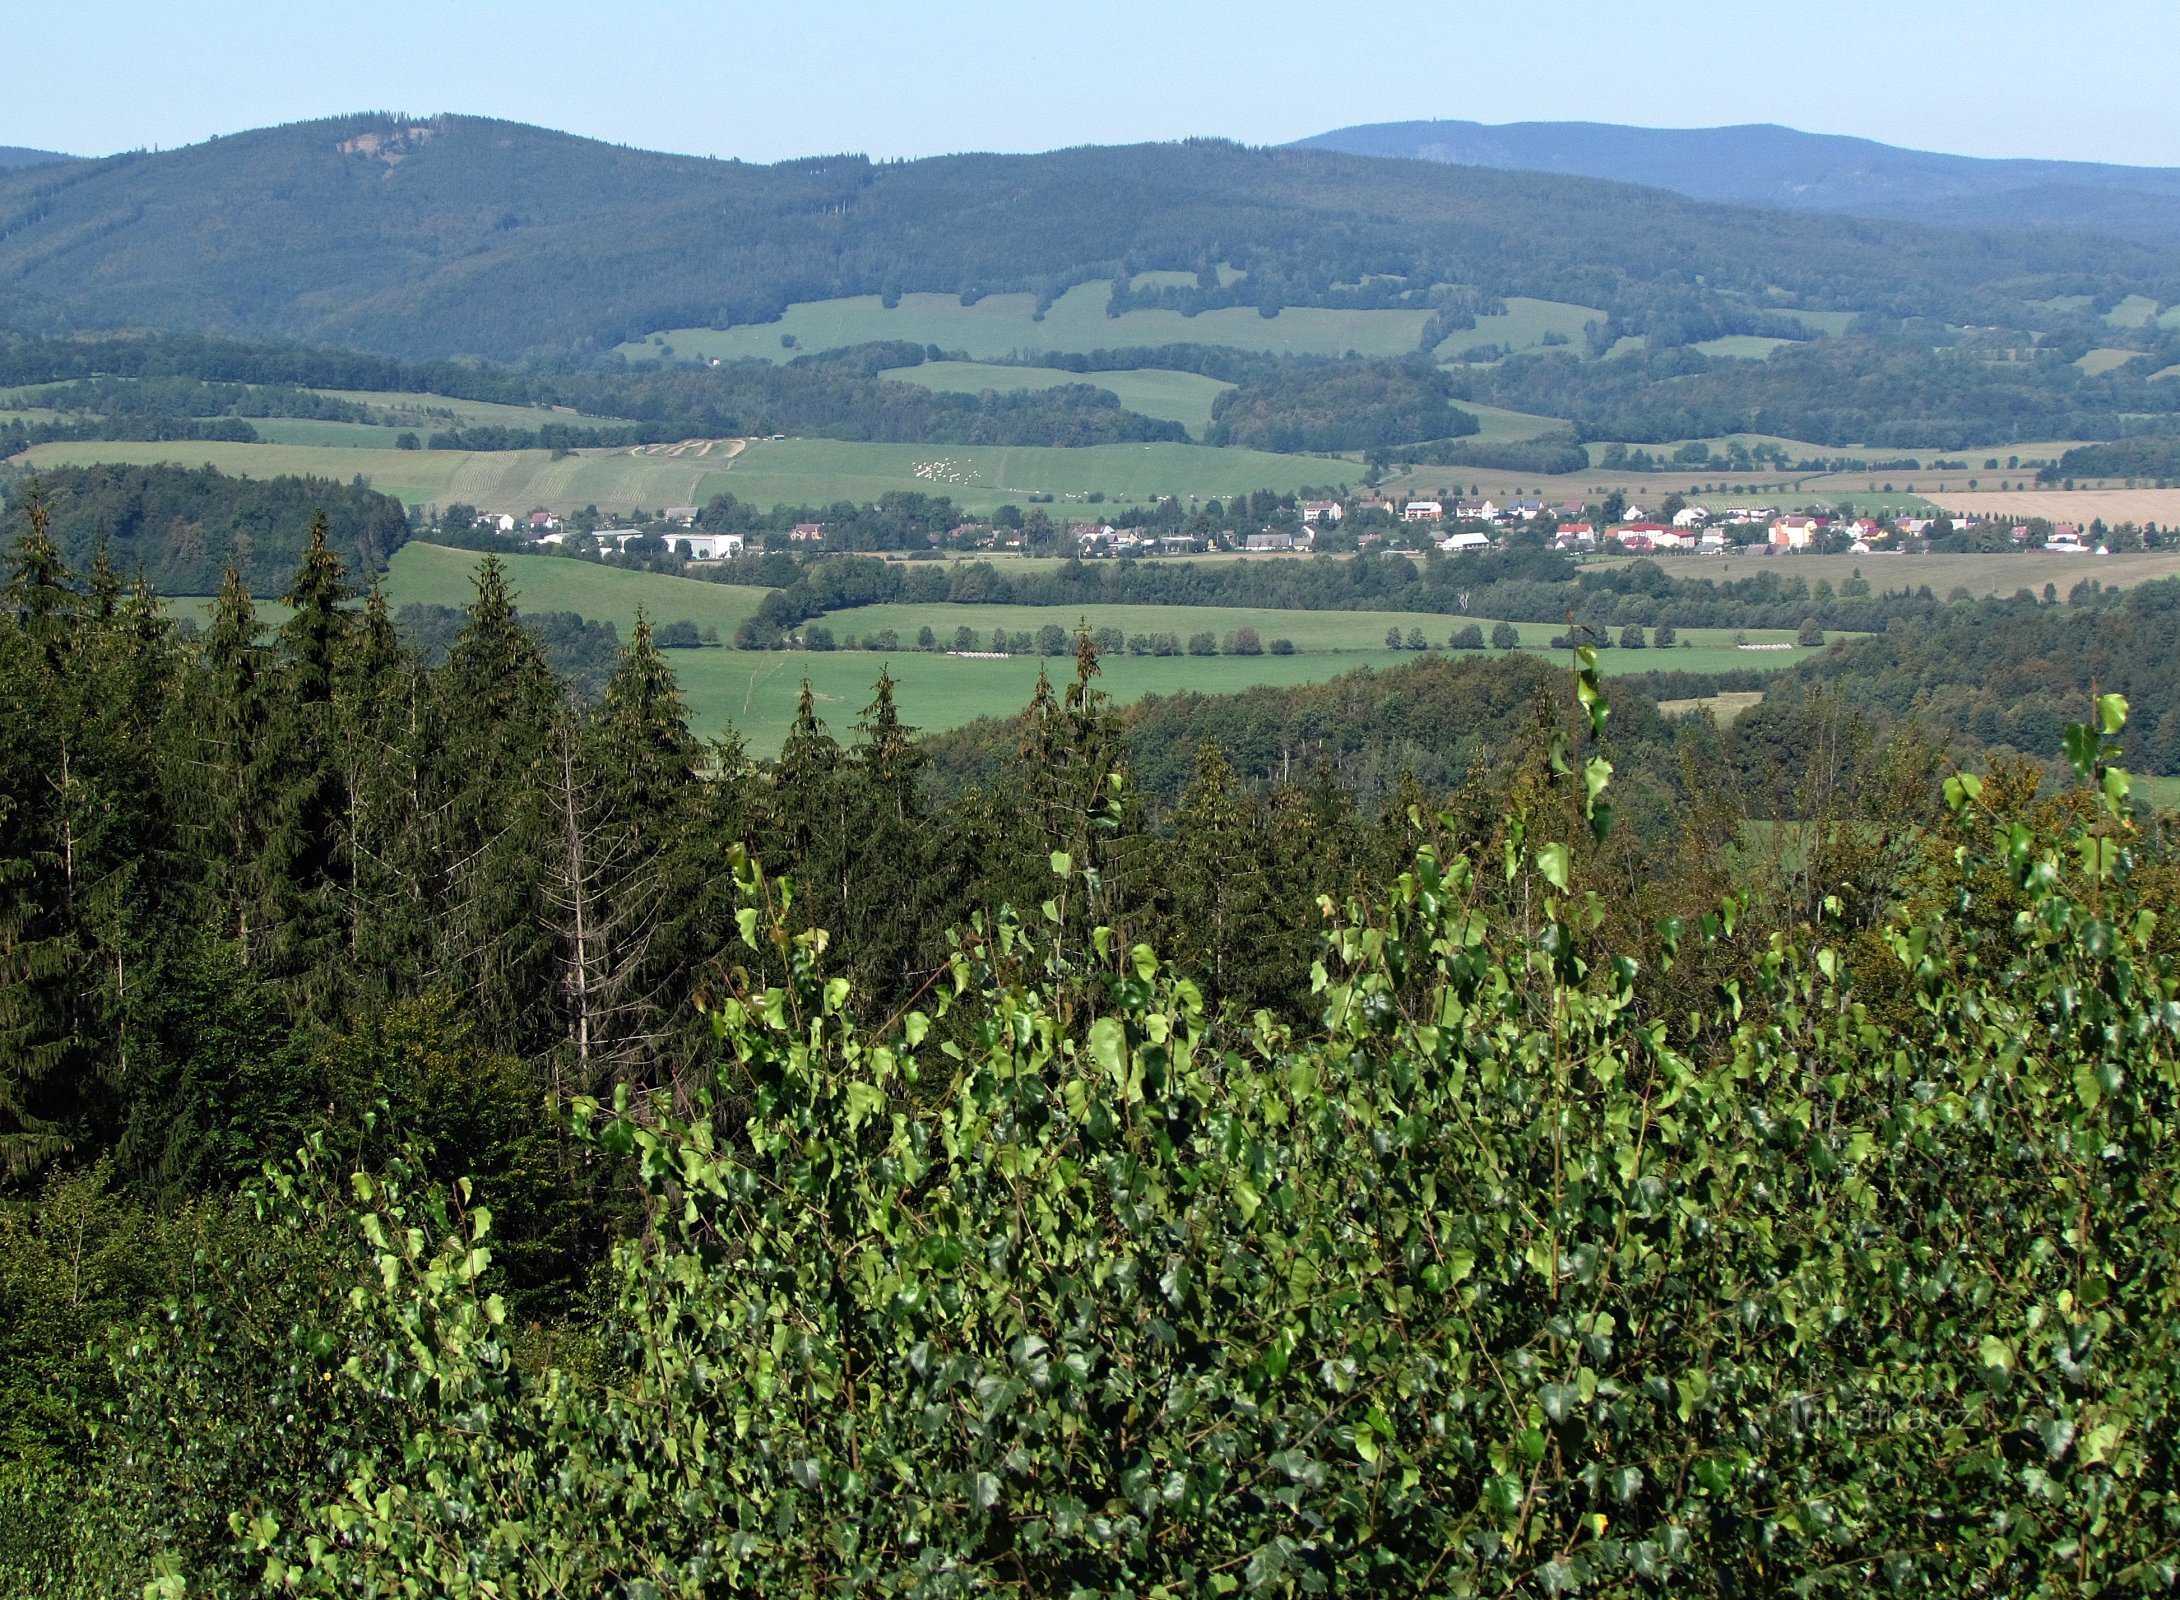 Zhulové vrch からの眺め